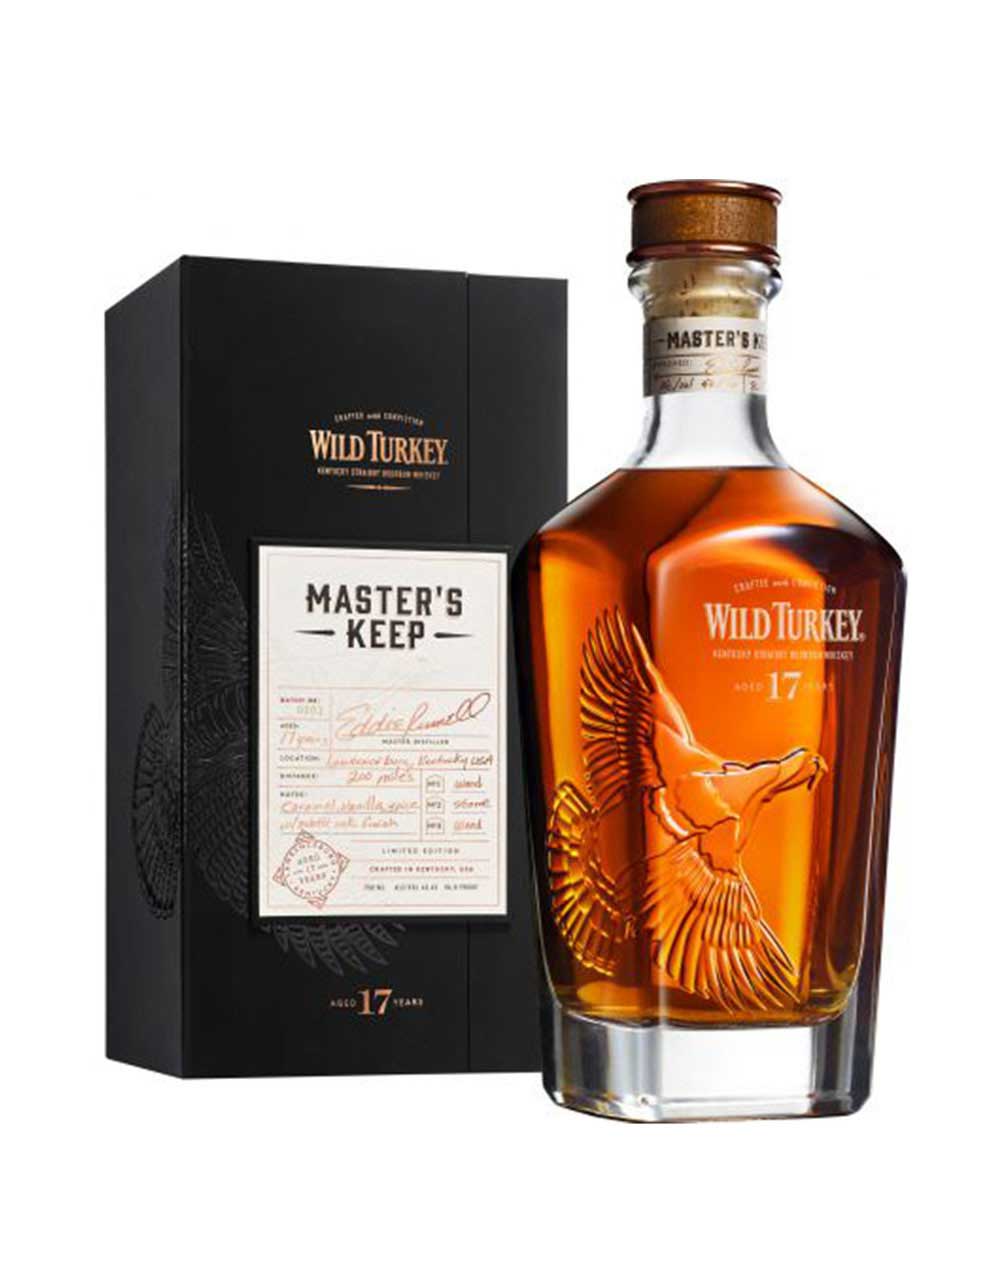 Wild Turkey Master's Keep 17 Year Old Kentucky Straight Bourbon Whiskey